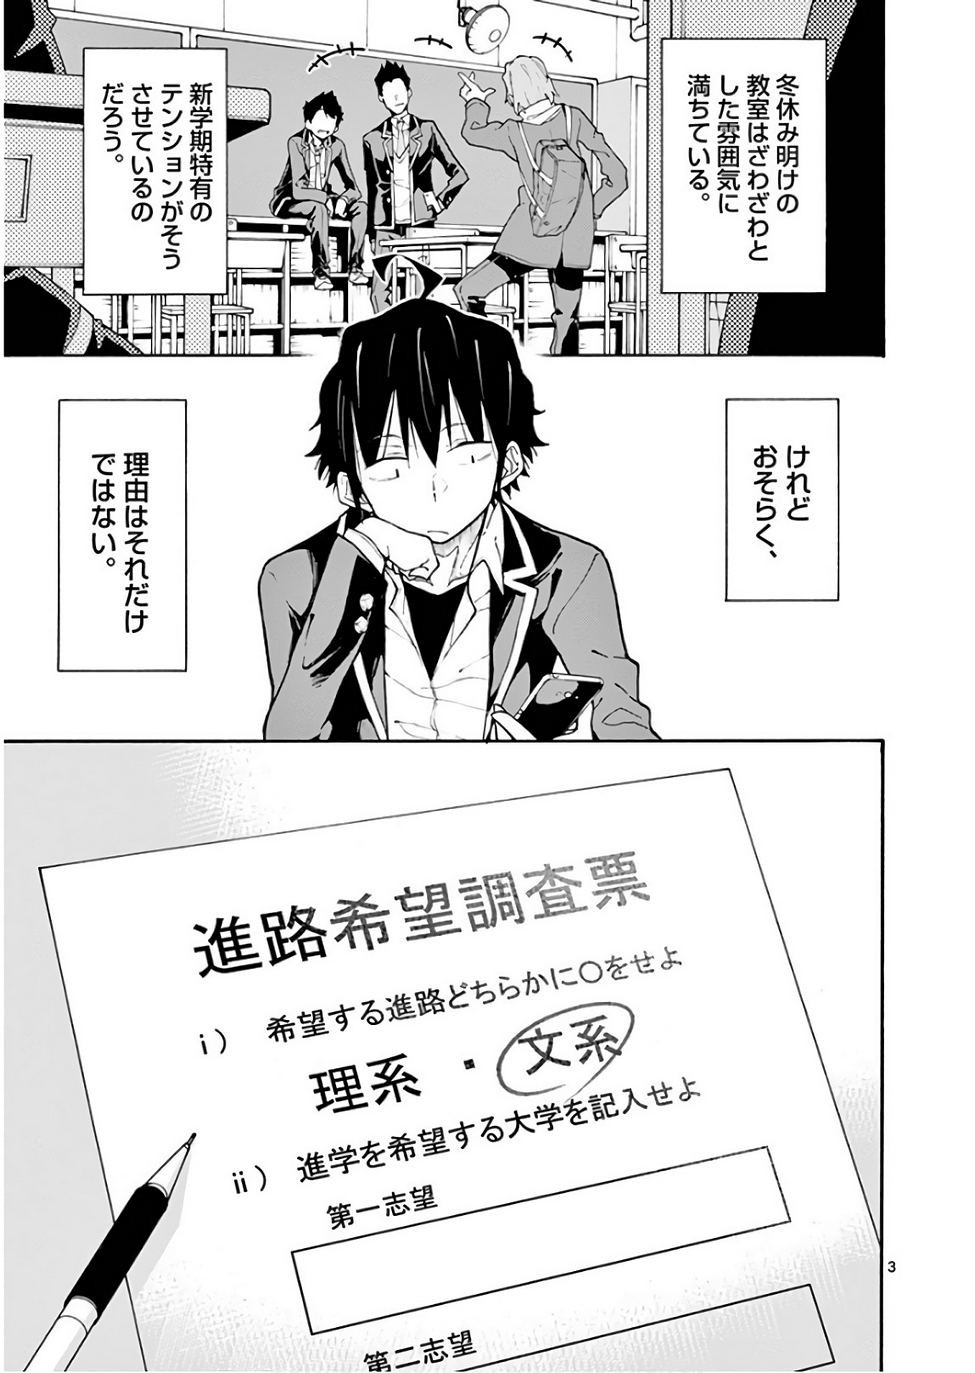 Yahari Ore no Seishun Rabukome wa Machigatte Iru. @ Comic - Chapter 75 - Page 3